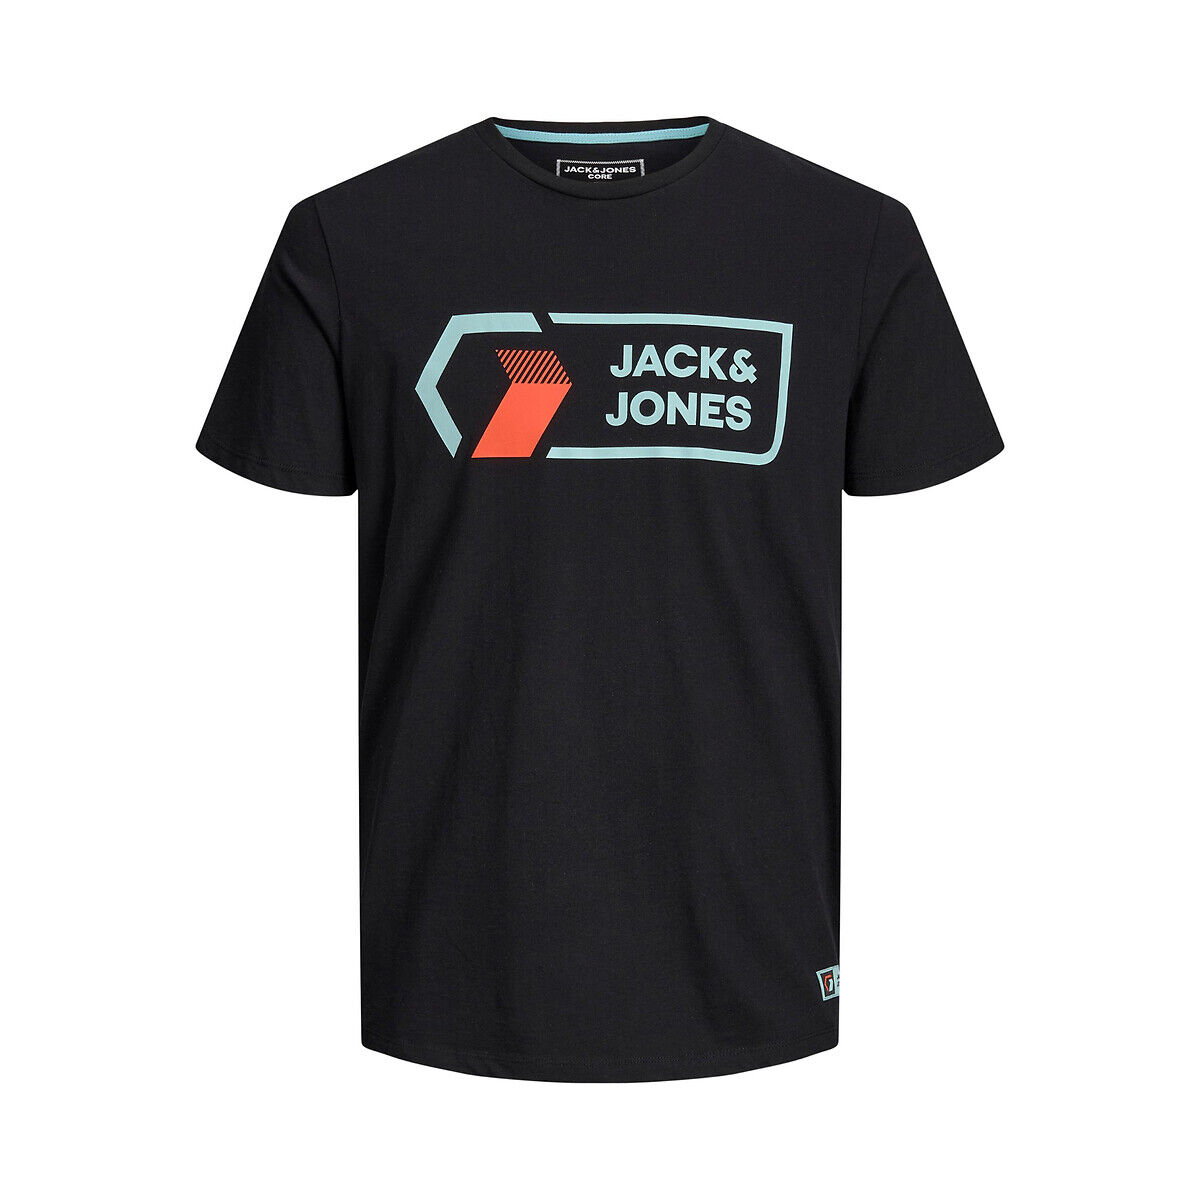 Jack & Jones T-shirt com gola redonda, Jcologan   Preto